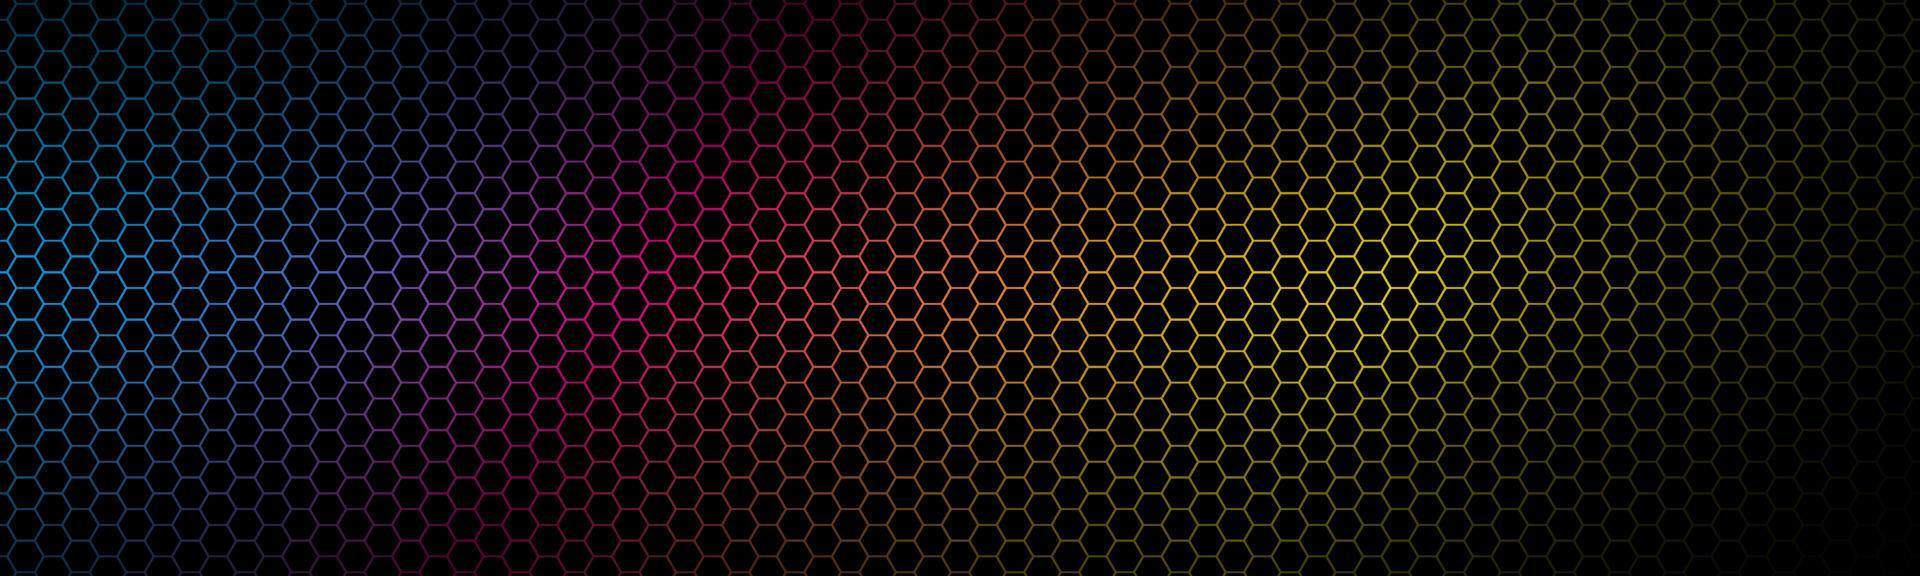 moderno encabezado geométrico cmyk de alta resolución con cuadrícula poligonal. patrón hexagonal metálico colorido abstracto. pancarta vectorial sencilla vector